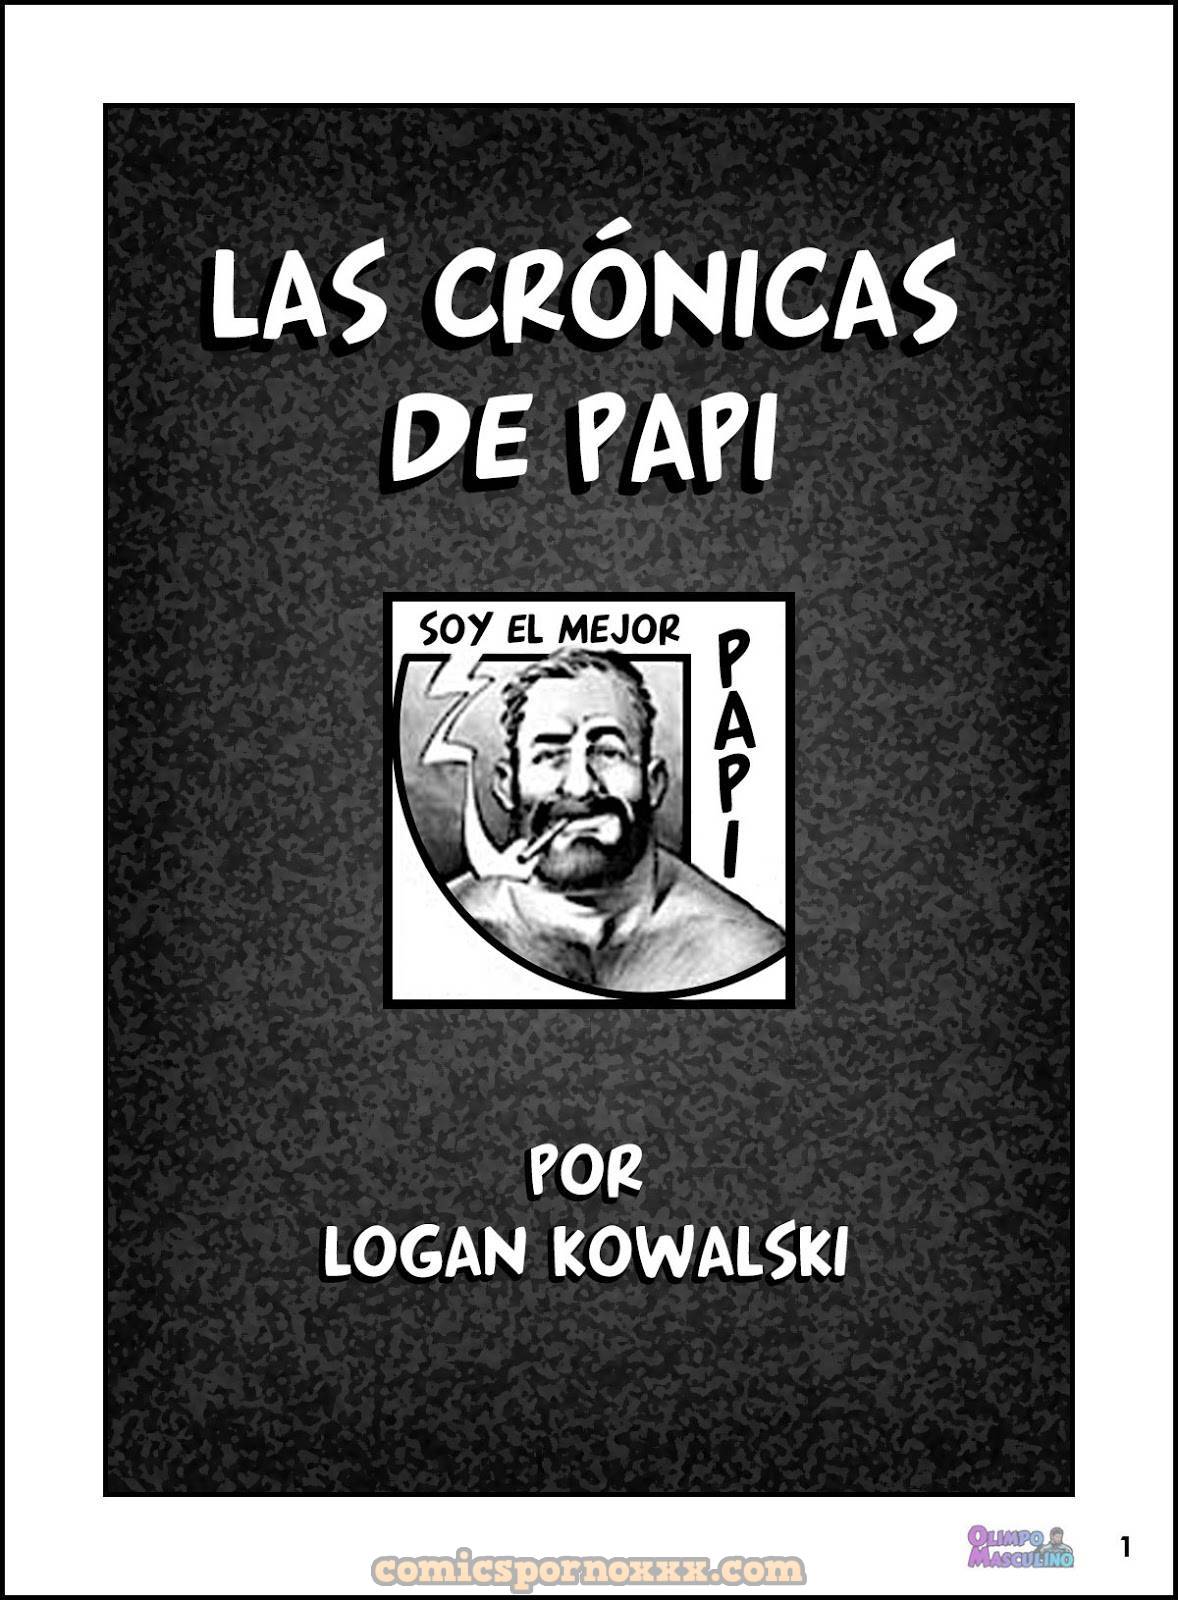 Las Crónicas de Papi (Logan Kowalski) - 1 - Comics Porno - Hentai Manga - Cartoon XXX